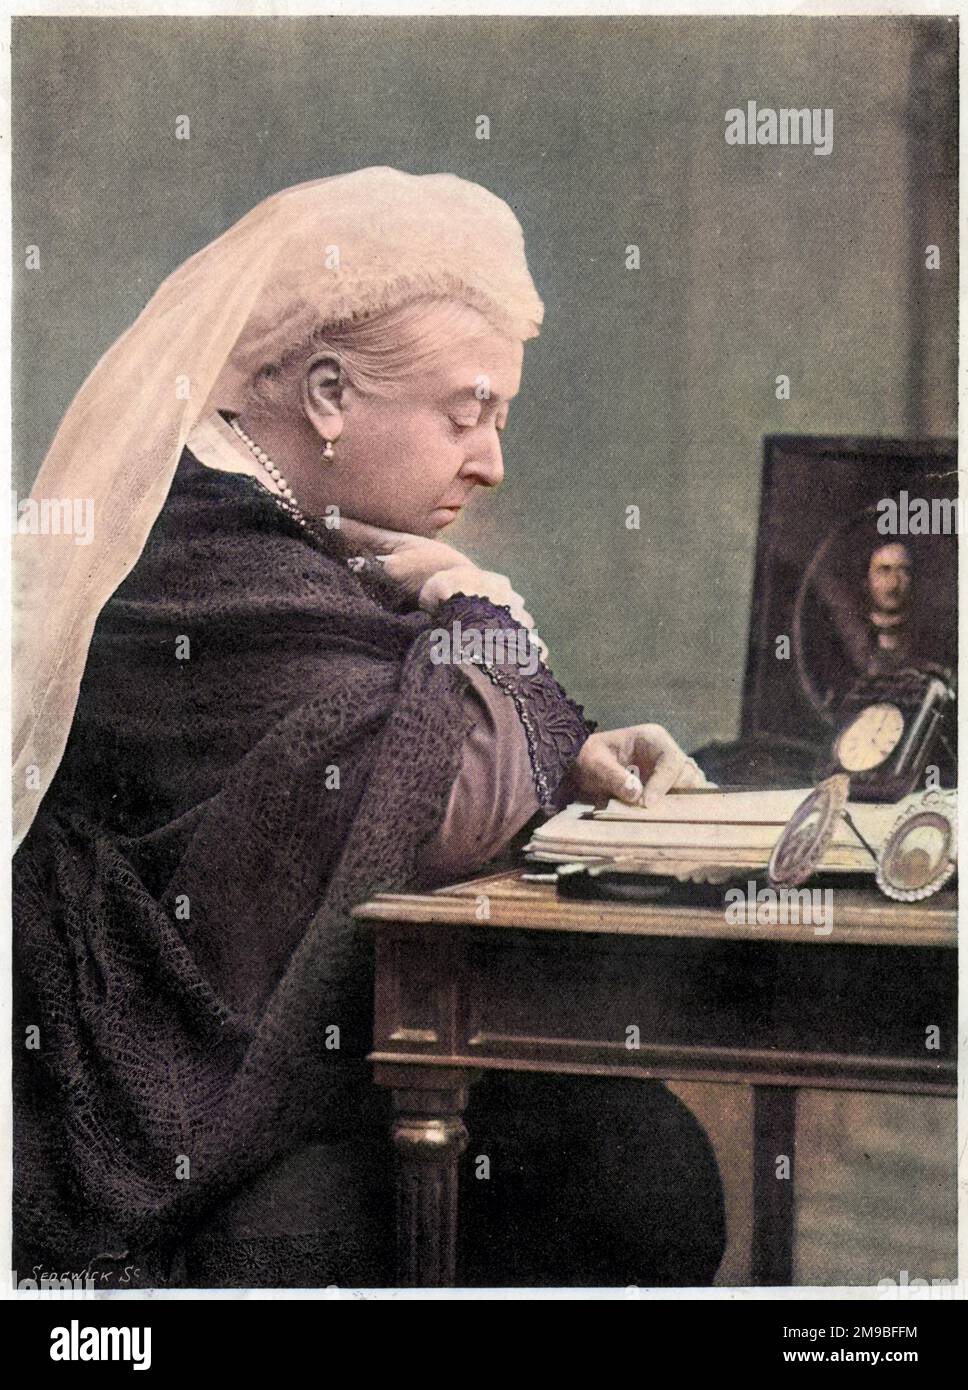 Königin Victoria (1819-1901), in den 1890er Jahren an ihrem Schreibtisch, mit einem Bild ihres verstorbenen Ehemanns Prinz Albert an ihrer Seite. Stockfoto